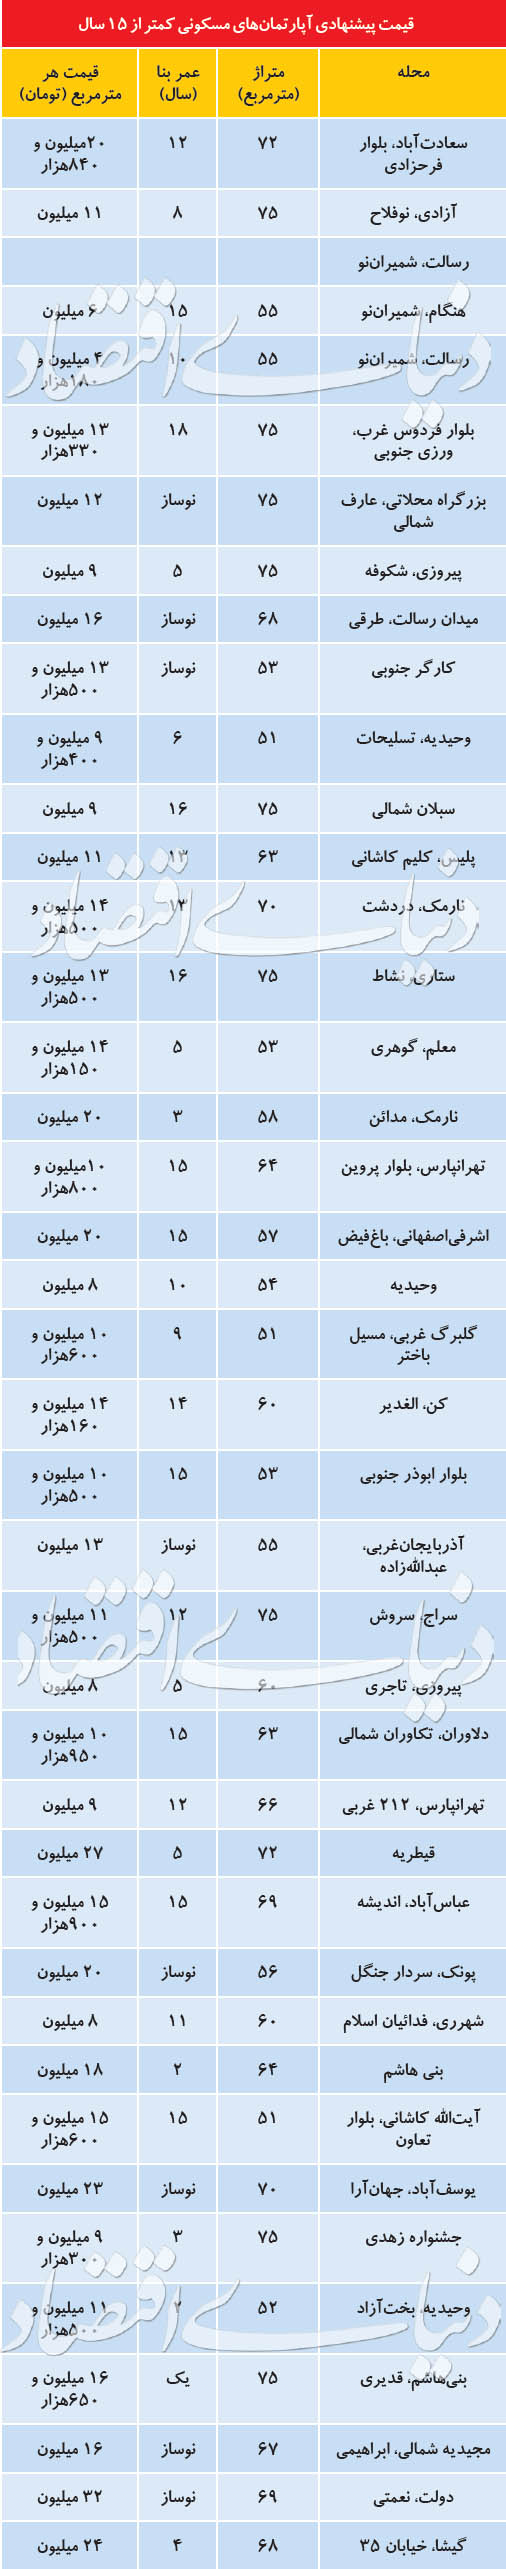 بازار معامله املاک کمتر از 15 سال در تهران